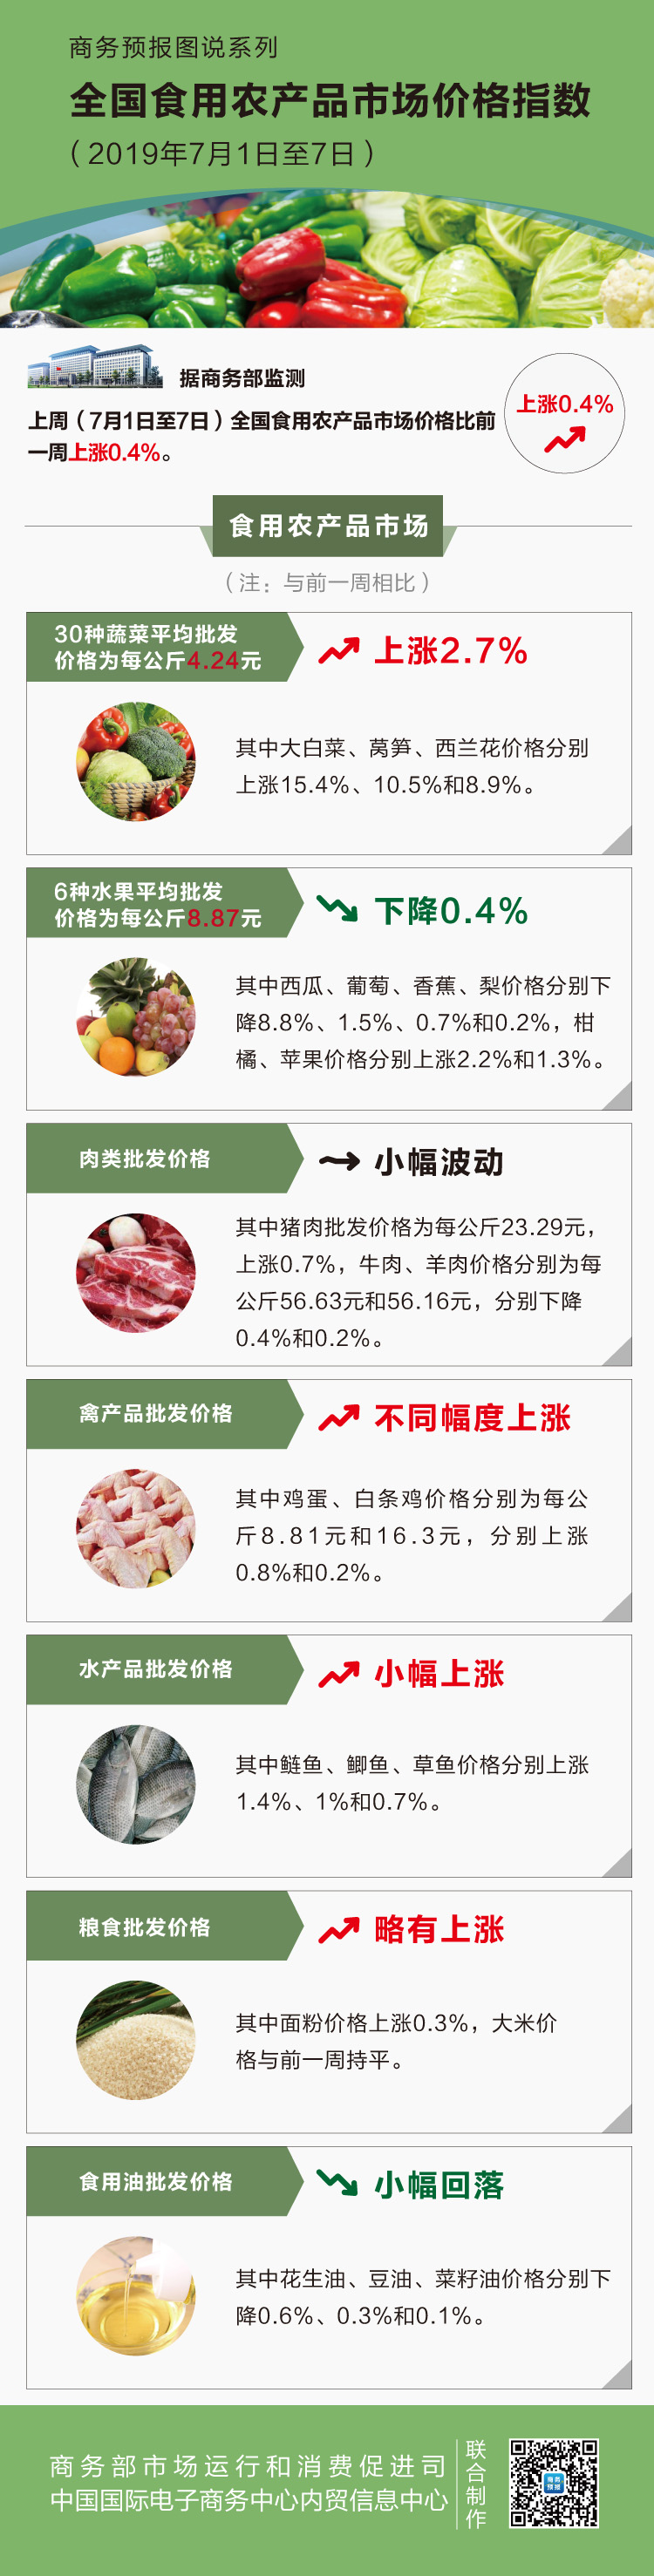 七月第一周食用农产品价格小幅上涨 30种蔬菜平均批发价格为每公斤4.24元